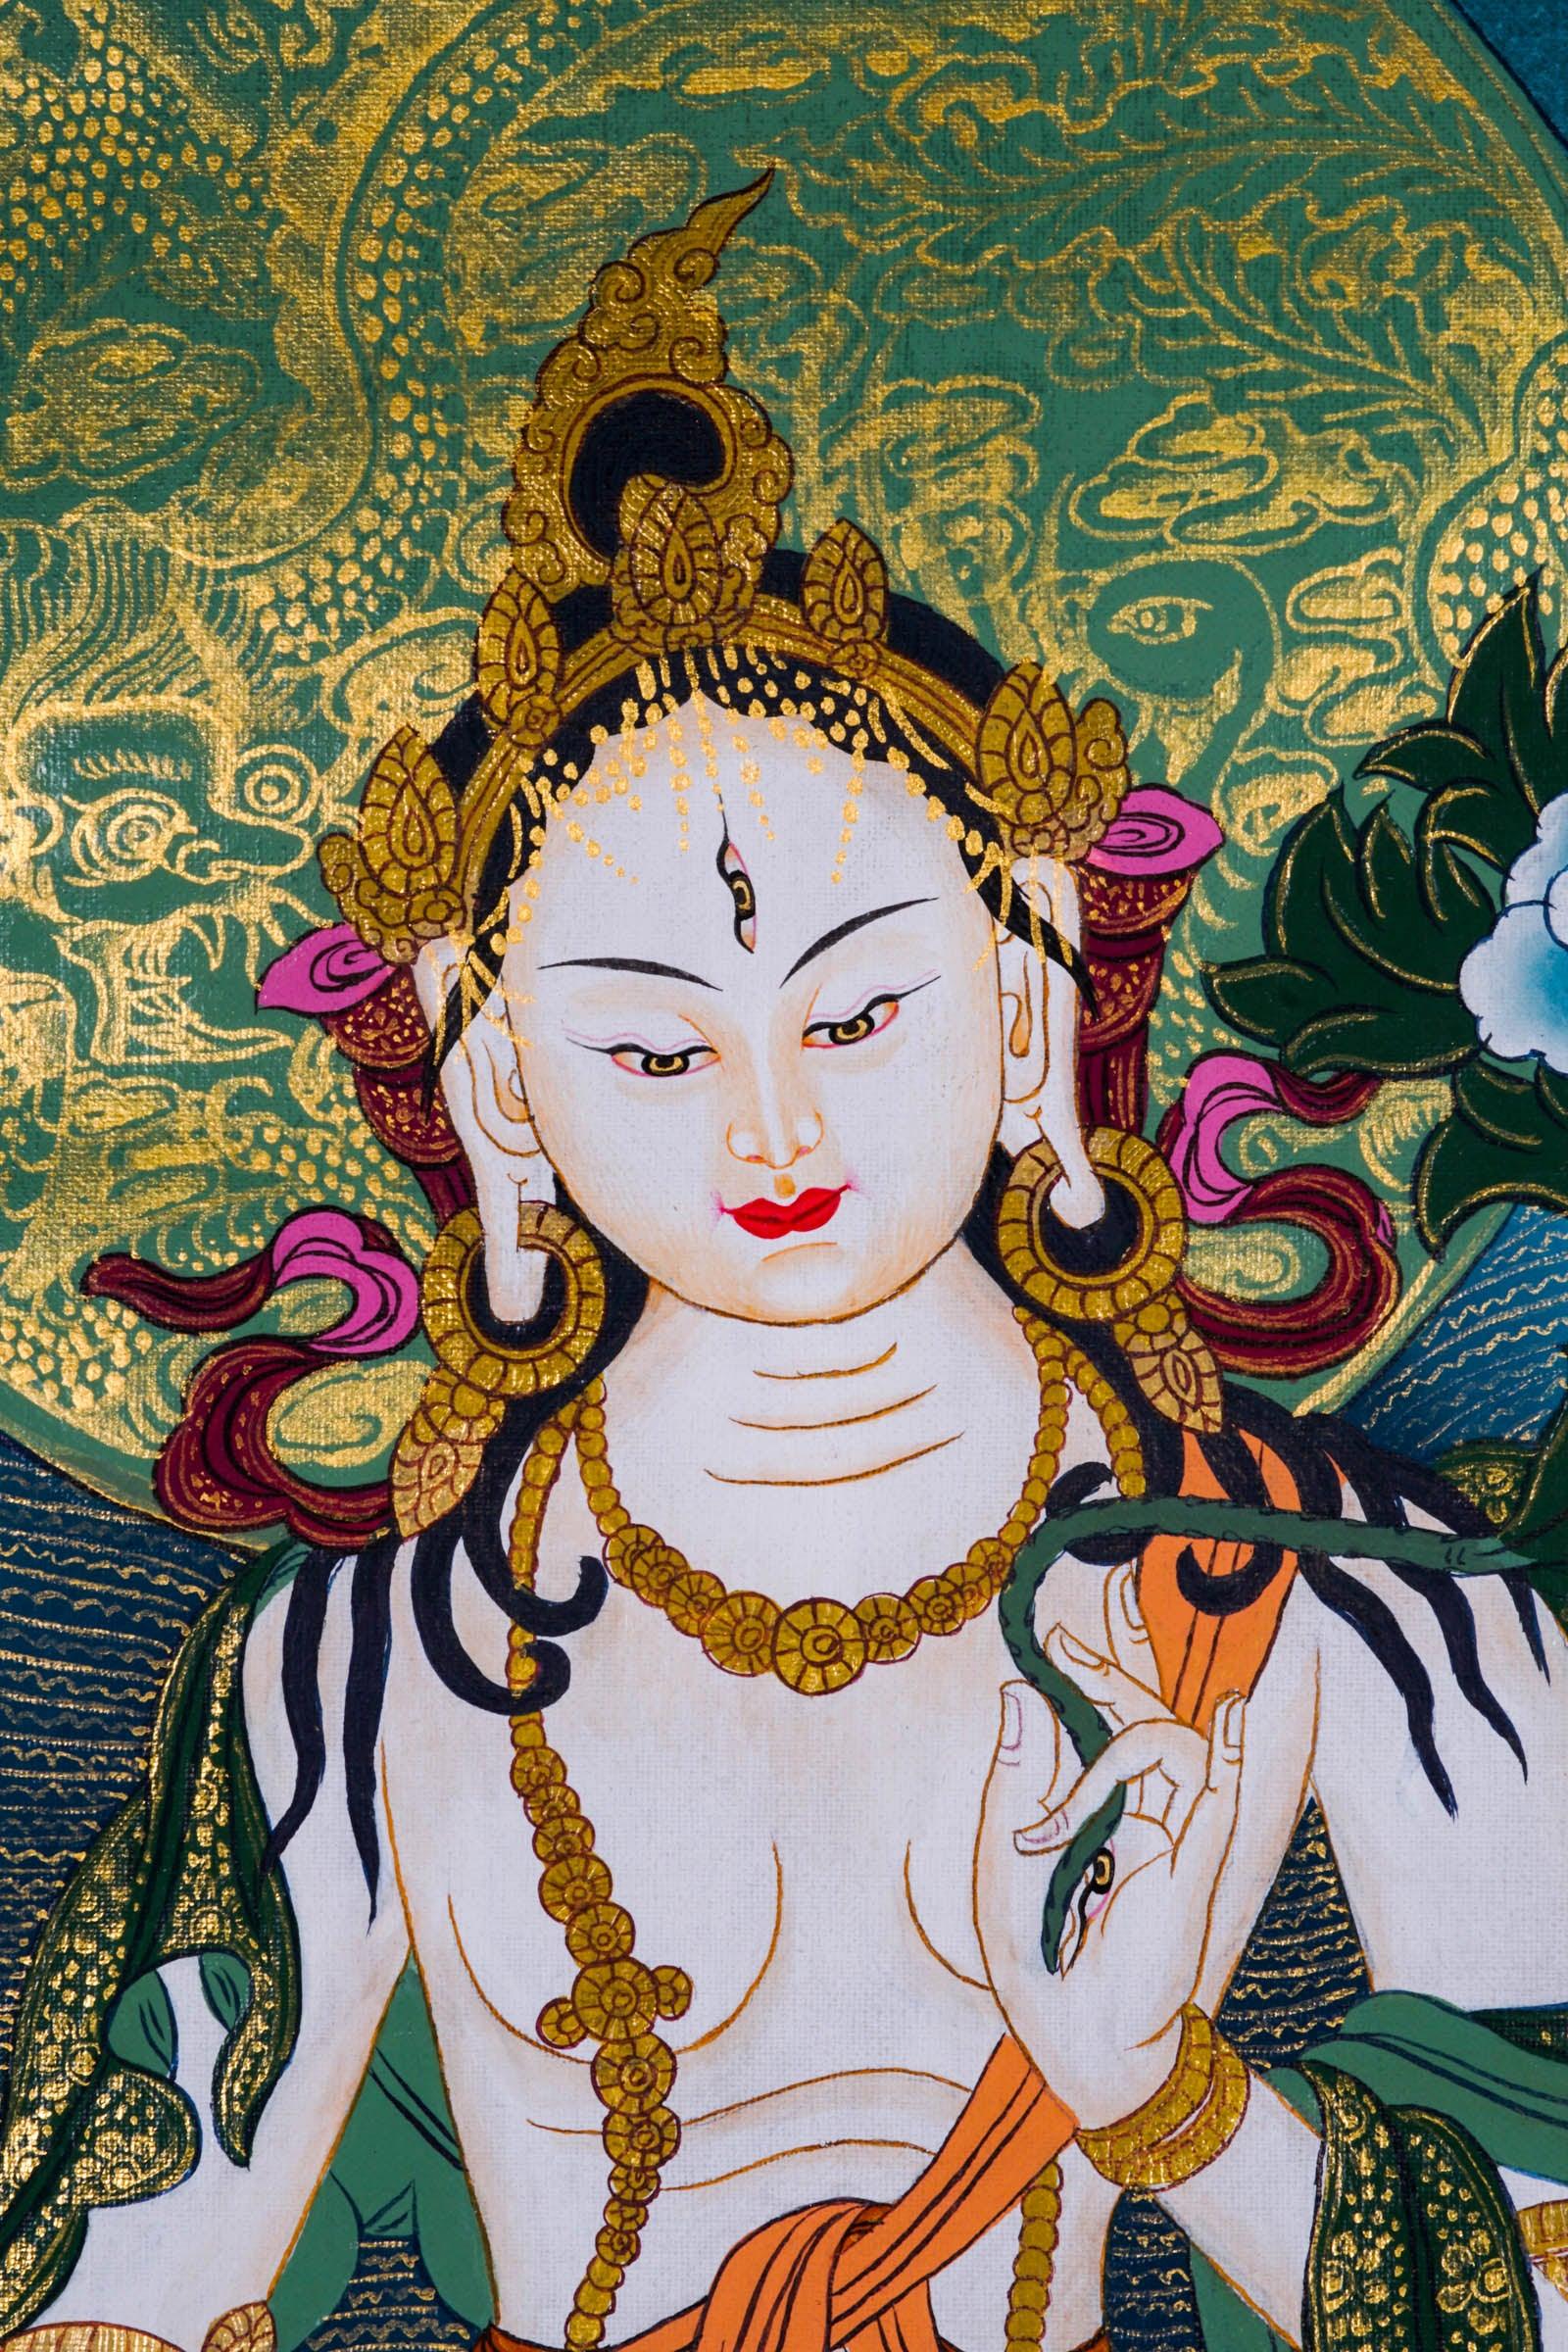 Chinese Tara Thangka Painting - Himalayas Shop